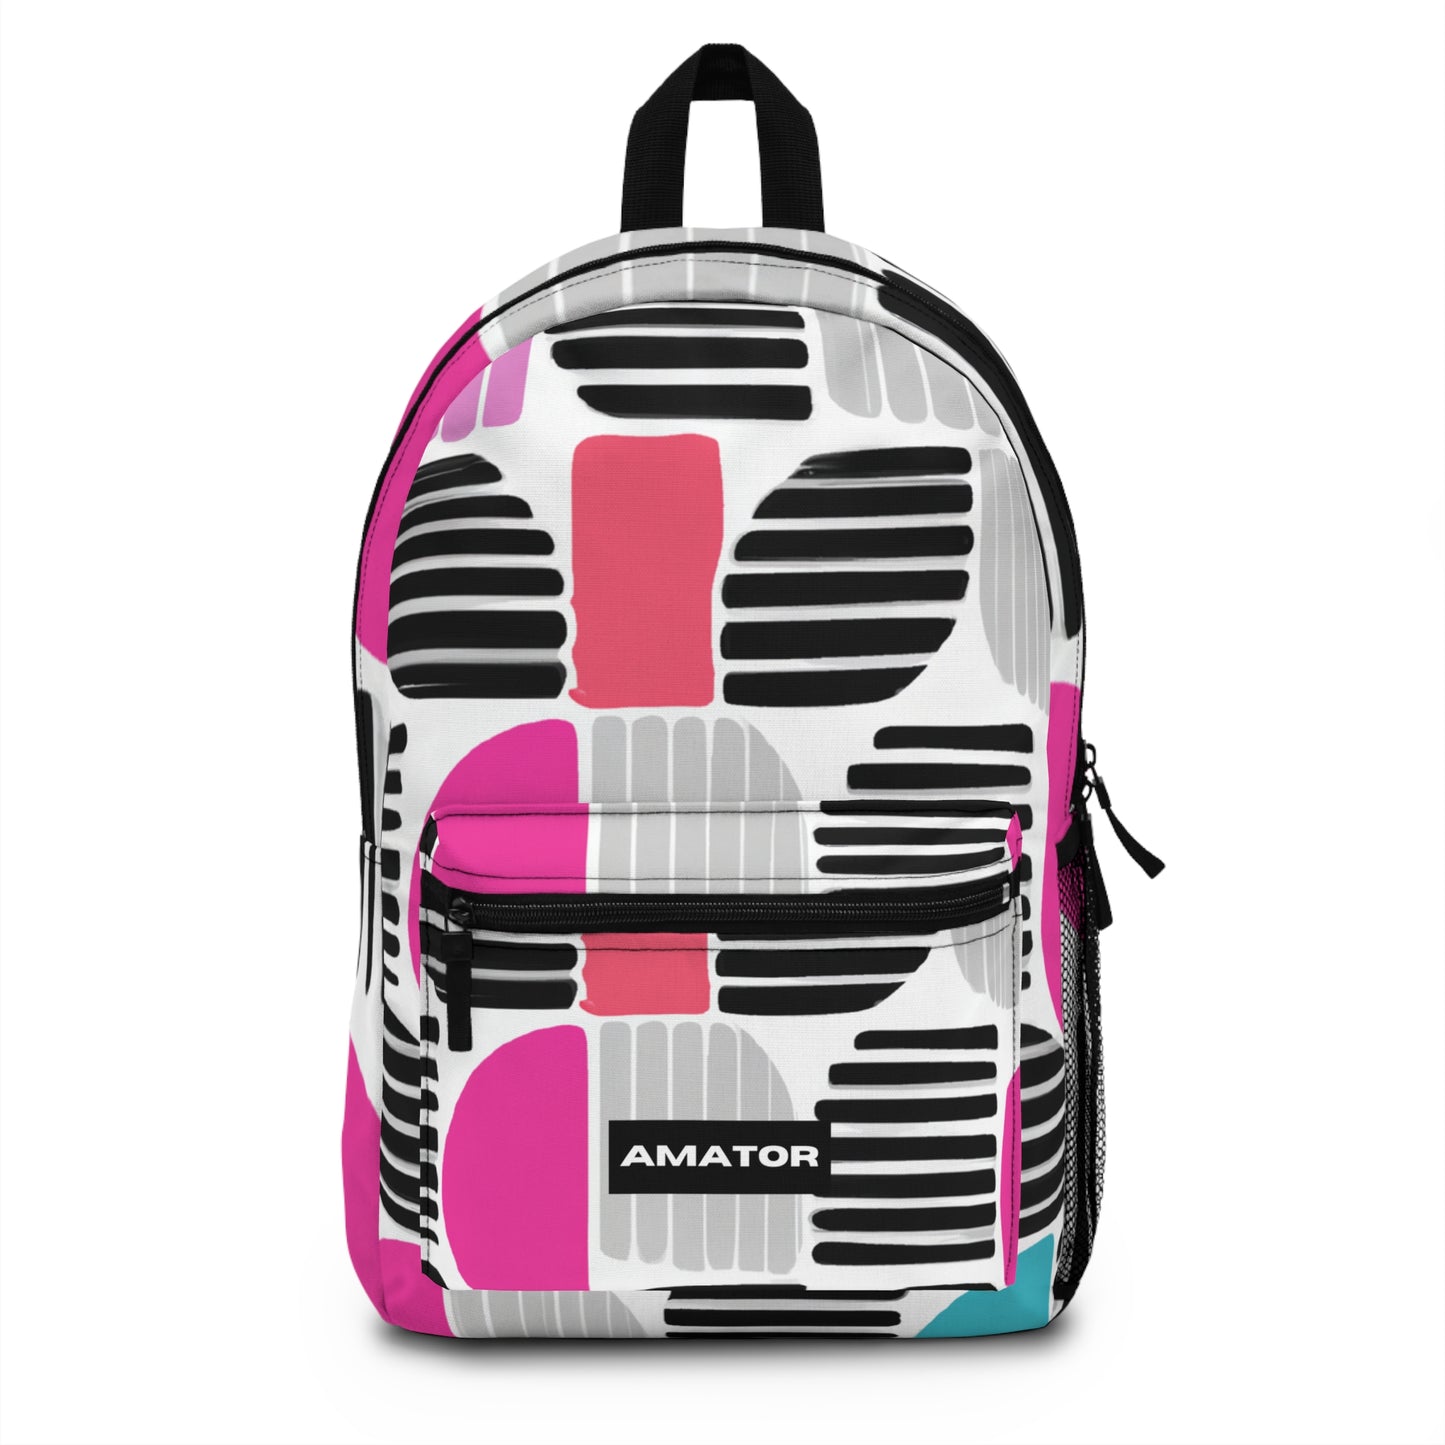 Marceline Delacroix Backpack